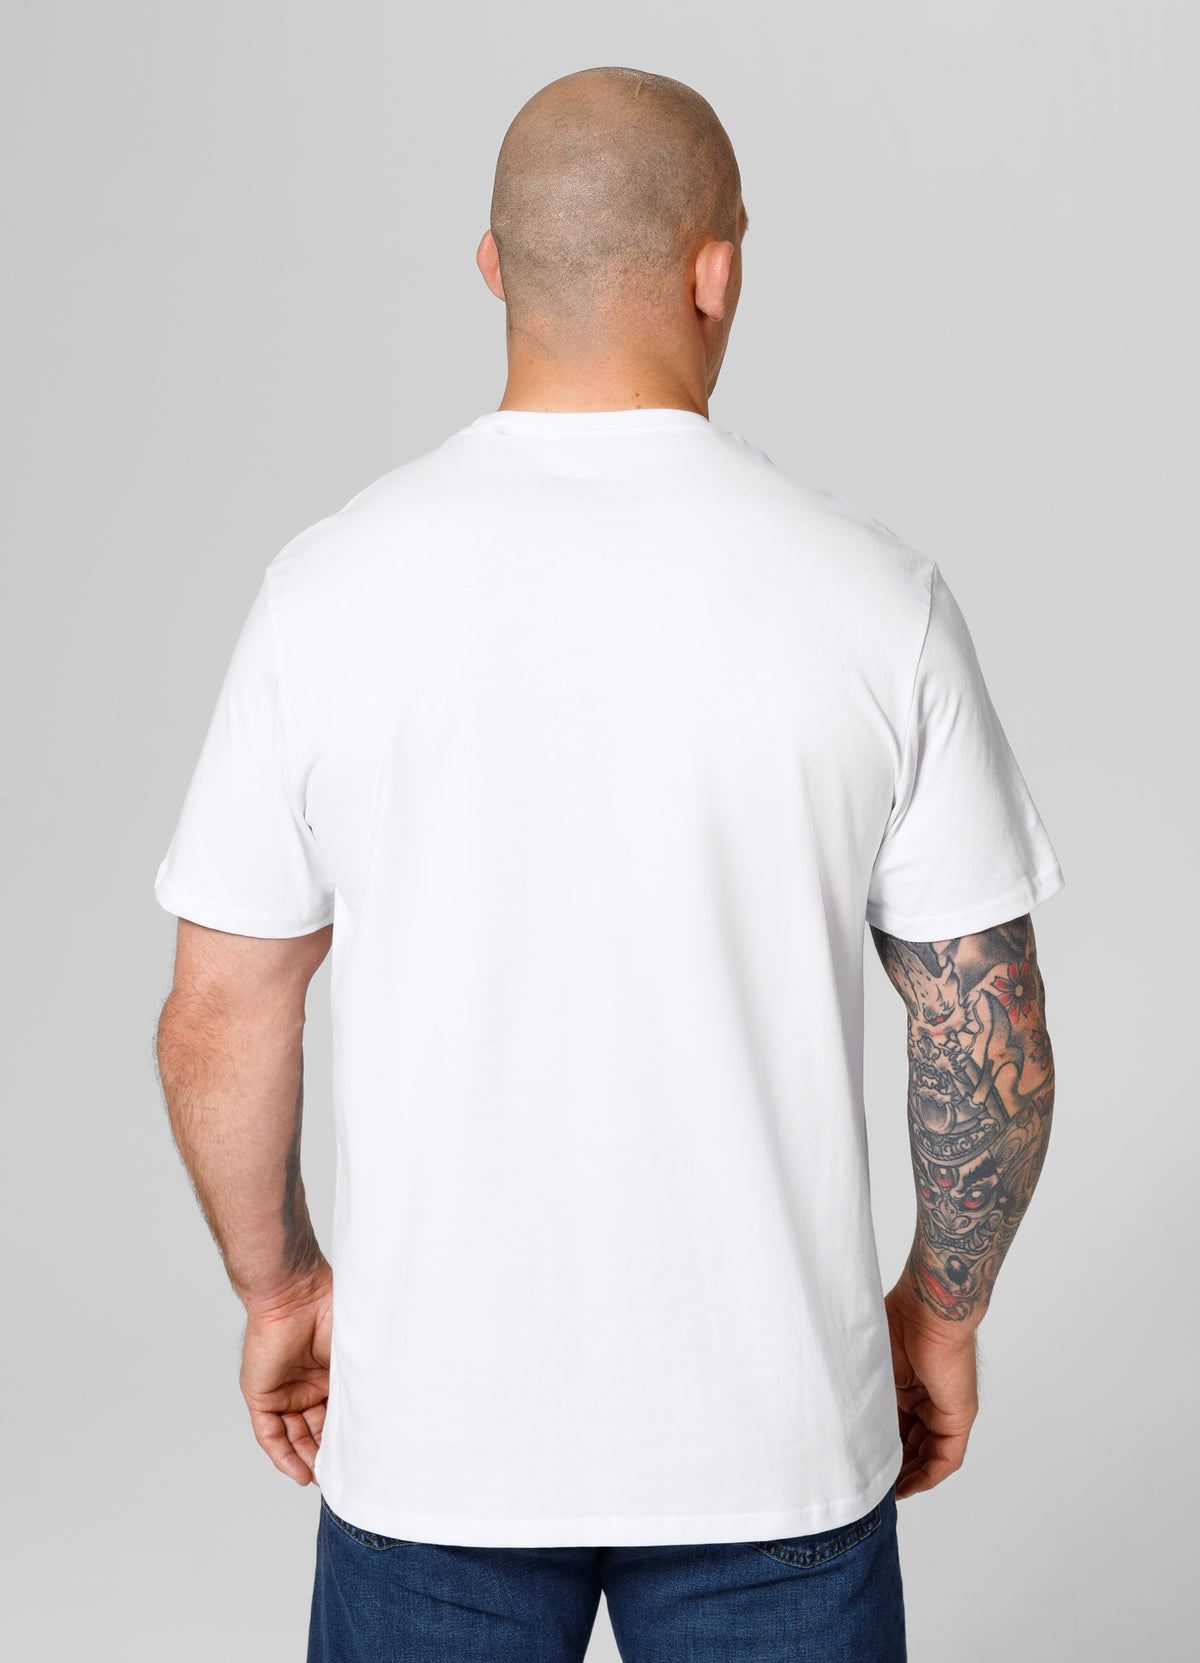 SCRATCH Lightweight White T-shirt - Pitbullstore.eu